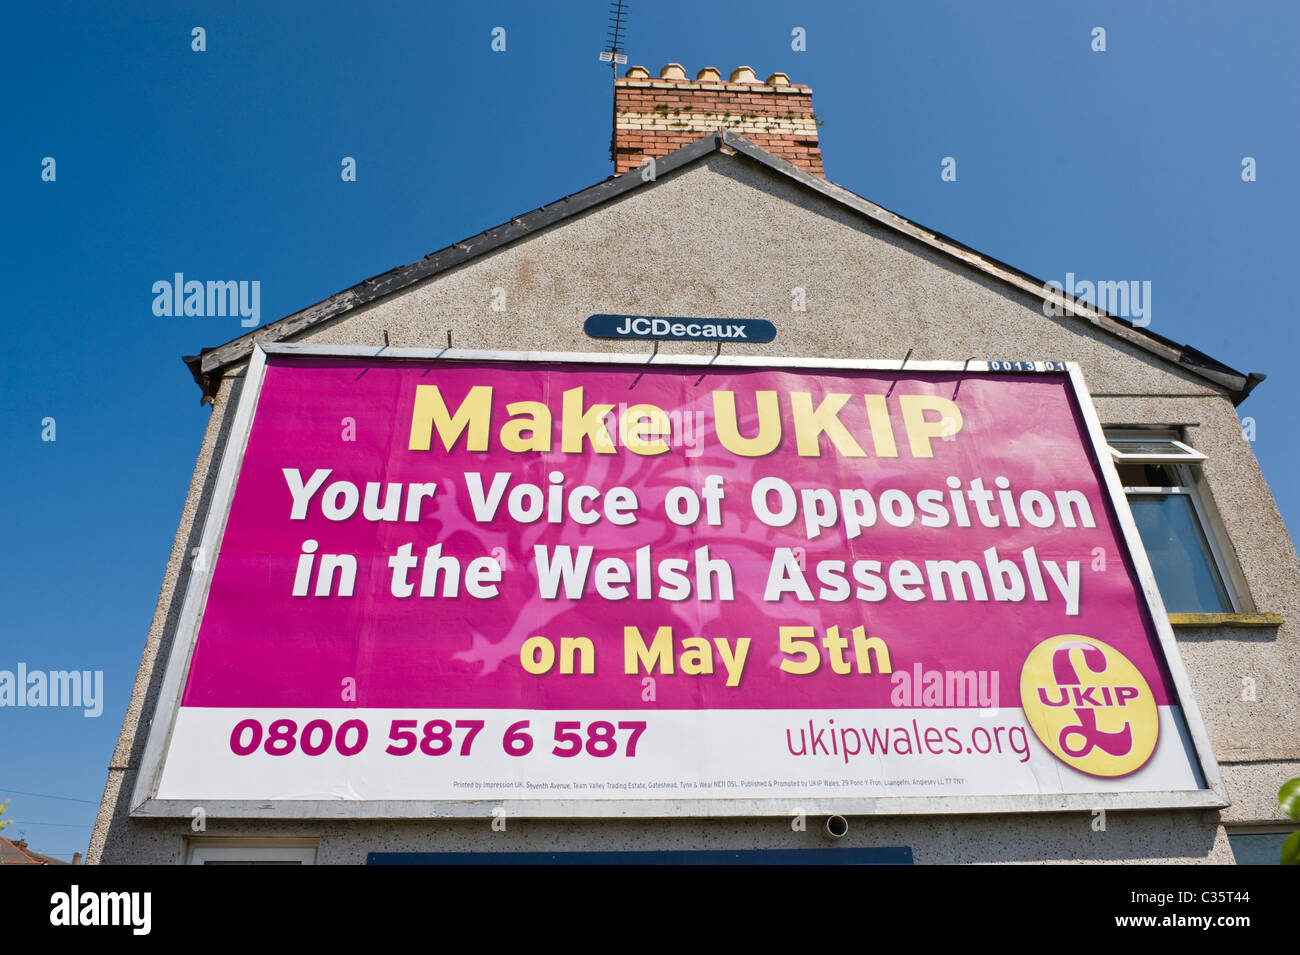 La pubblicità tramite Affissioni JCDecaux sulla parete laterale del sito casa annuncio pubblicitario per il UKIP partito politico in Welsh Assembly elezioni Foto Stock